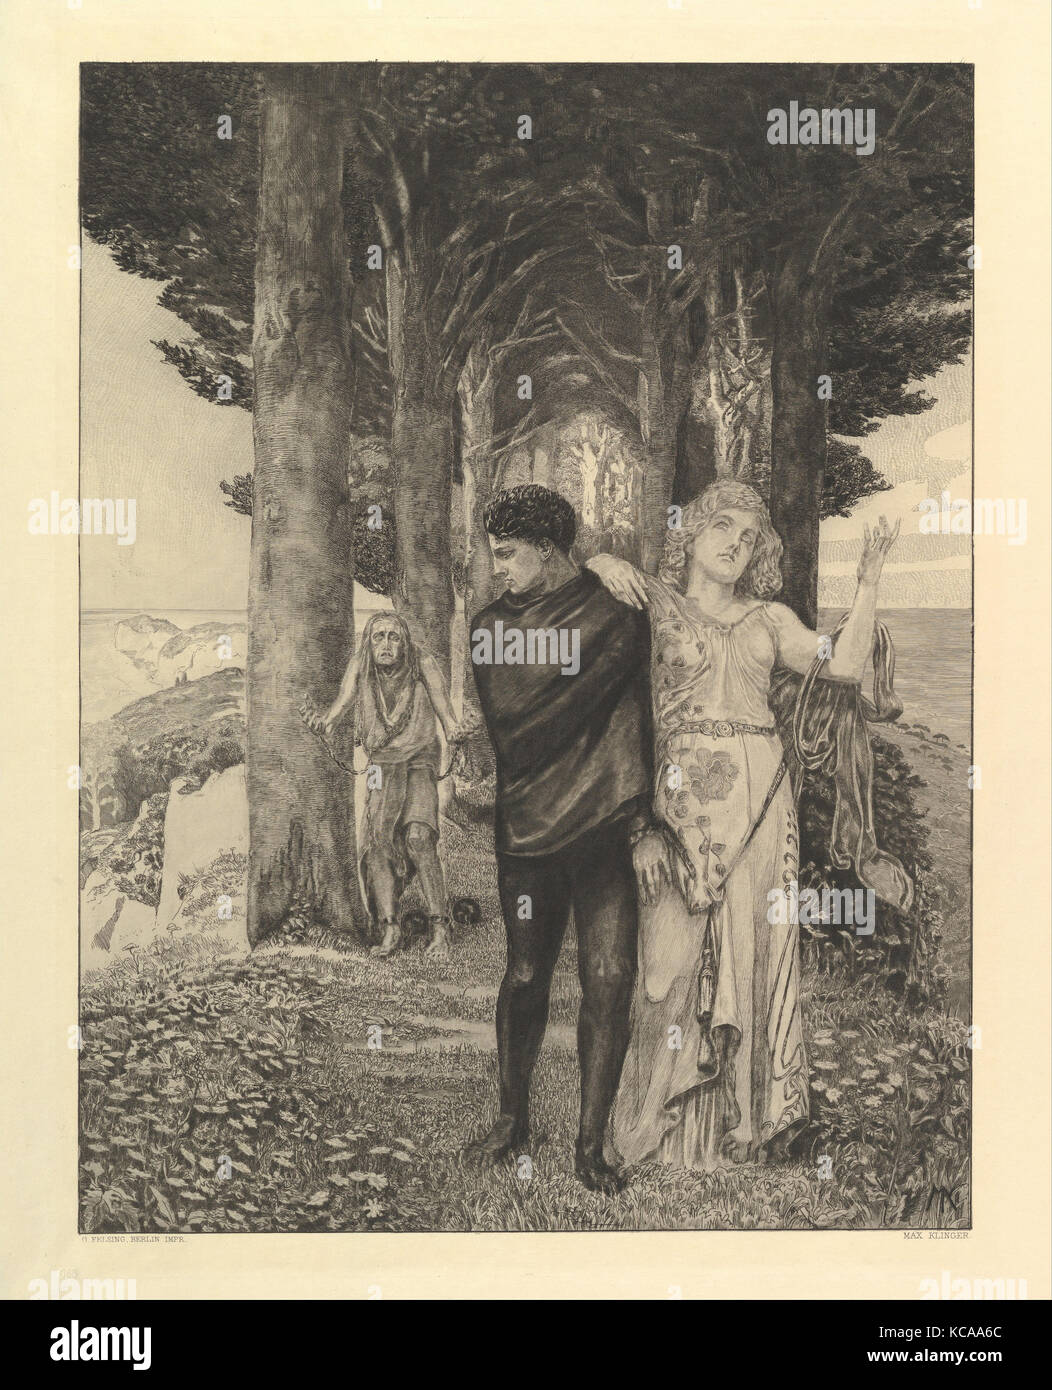 Genie (Künstler), from the series Vom Tode Zweiter Teil, Max Klinger, 1910 Stock Photo